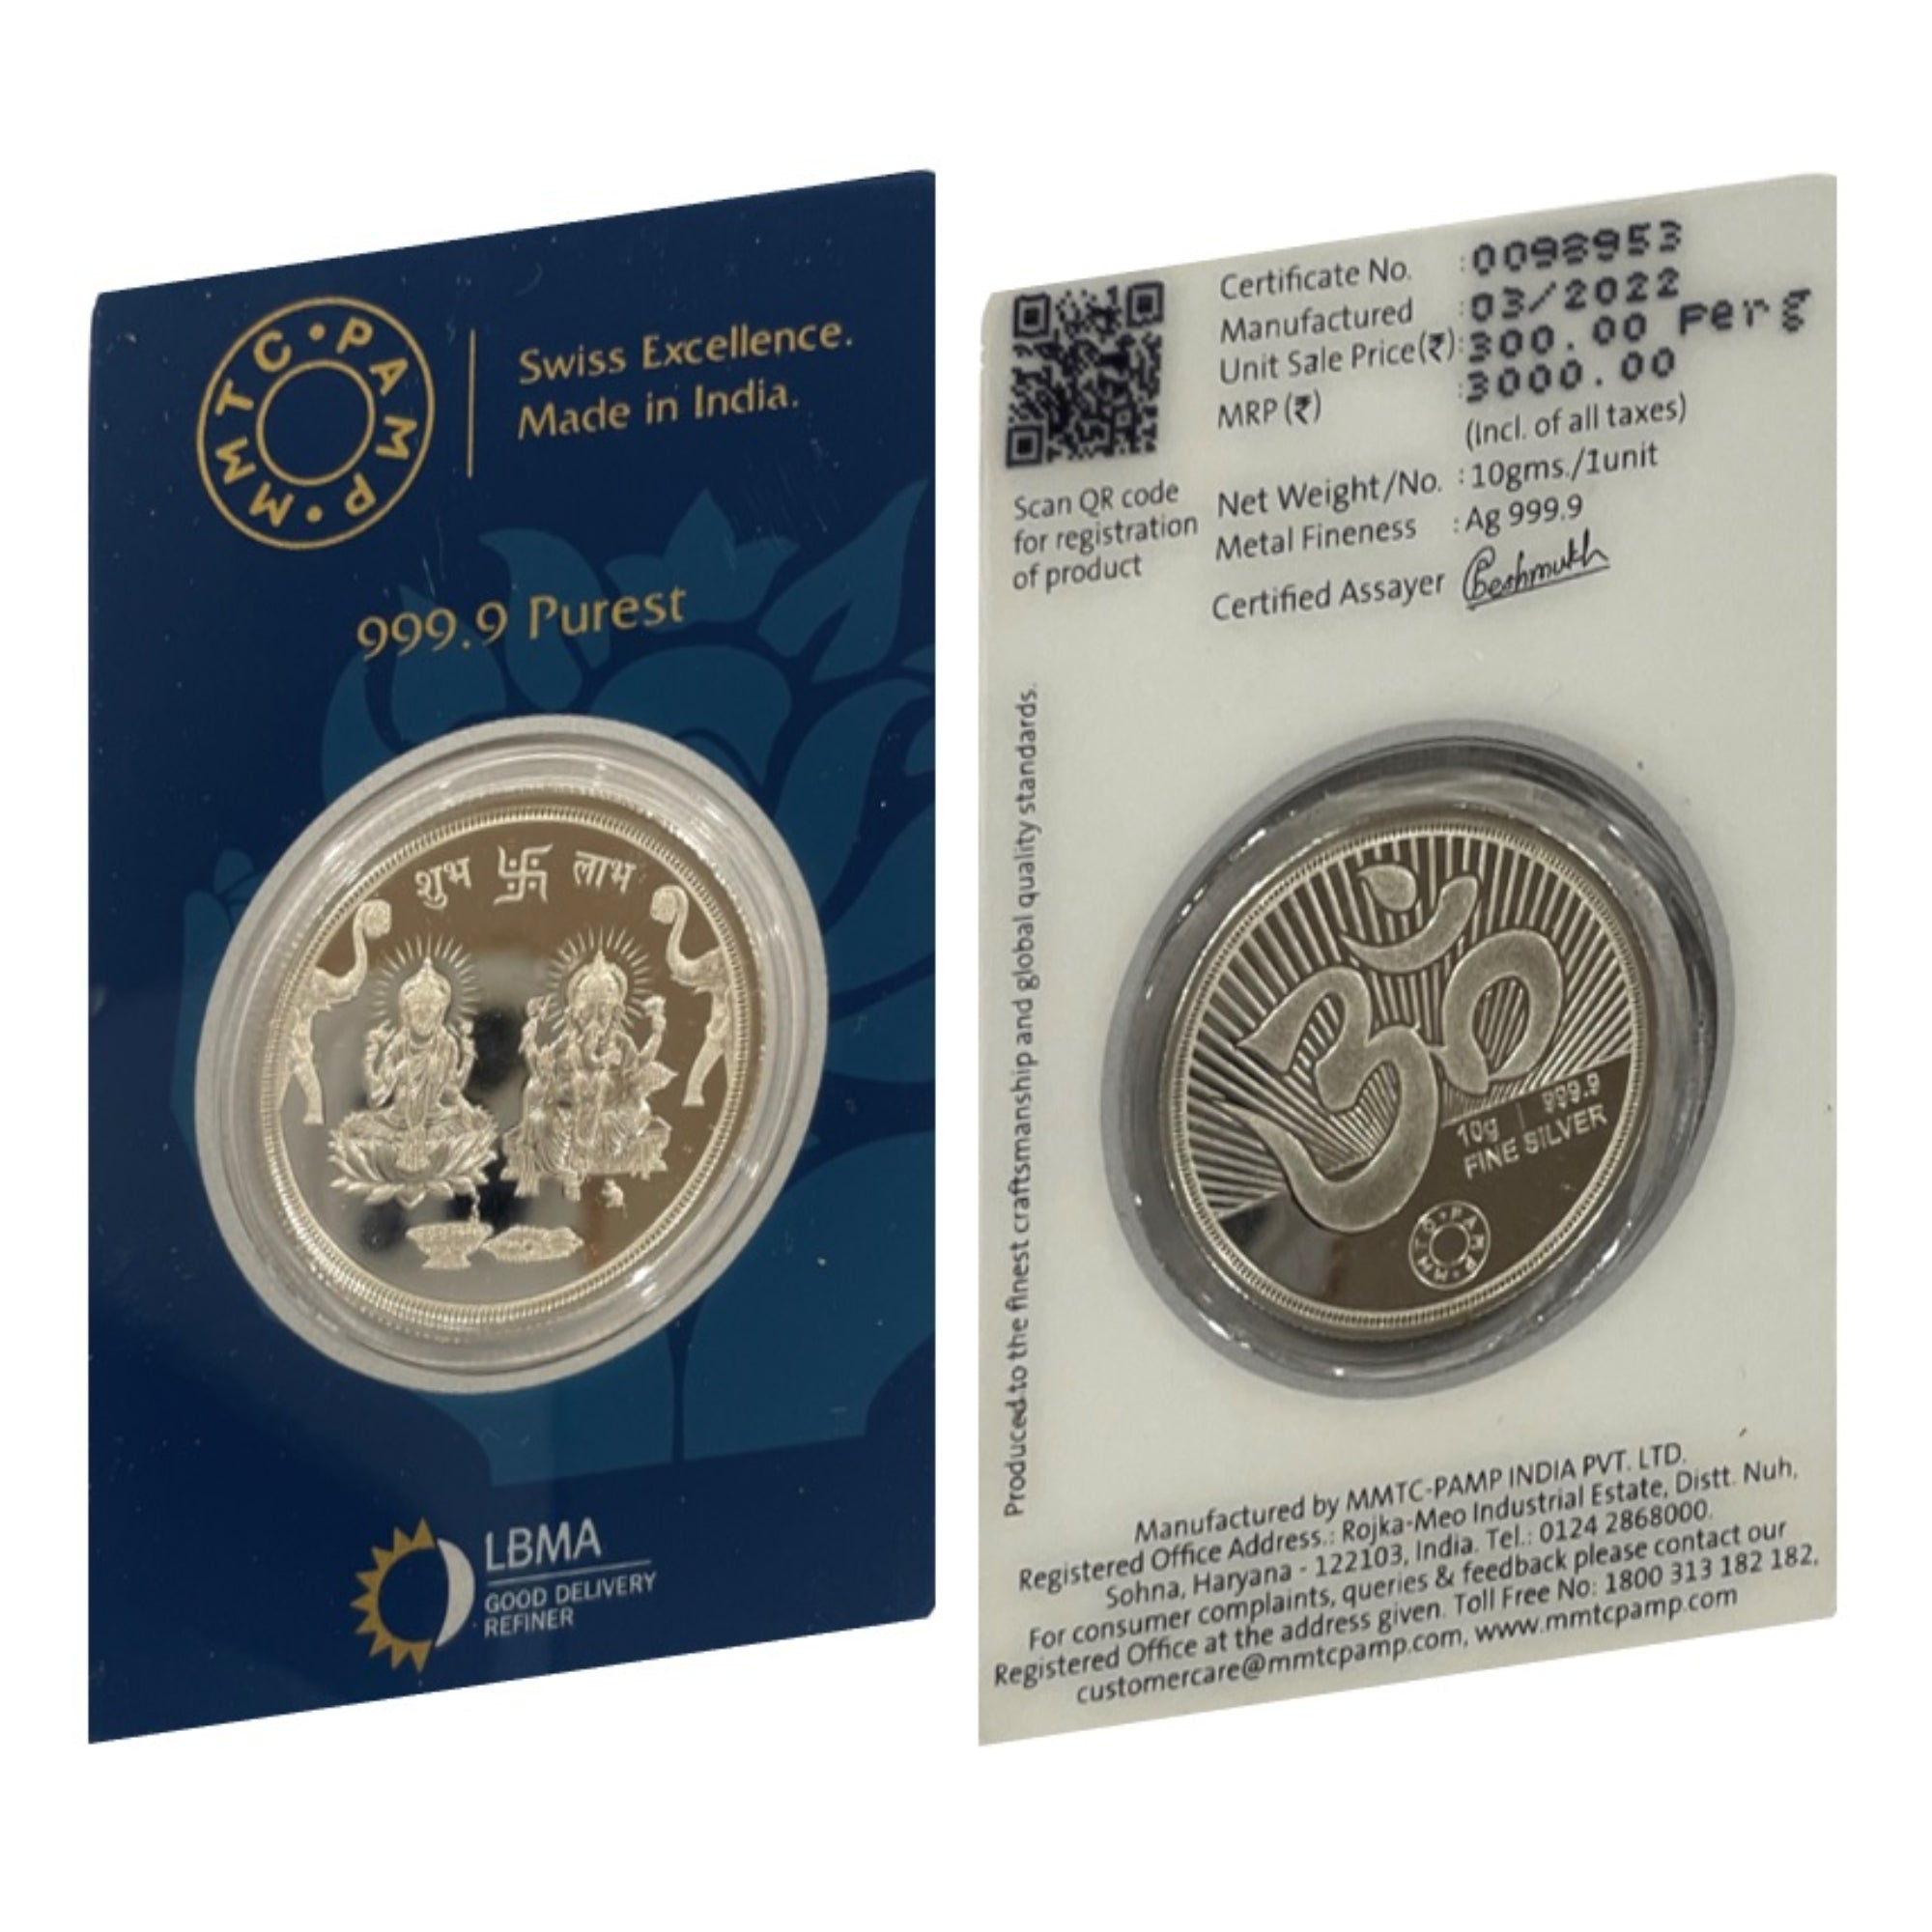 silver coin 10 gms